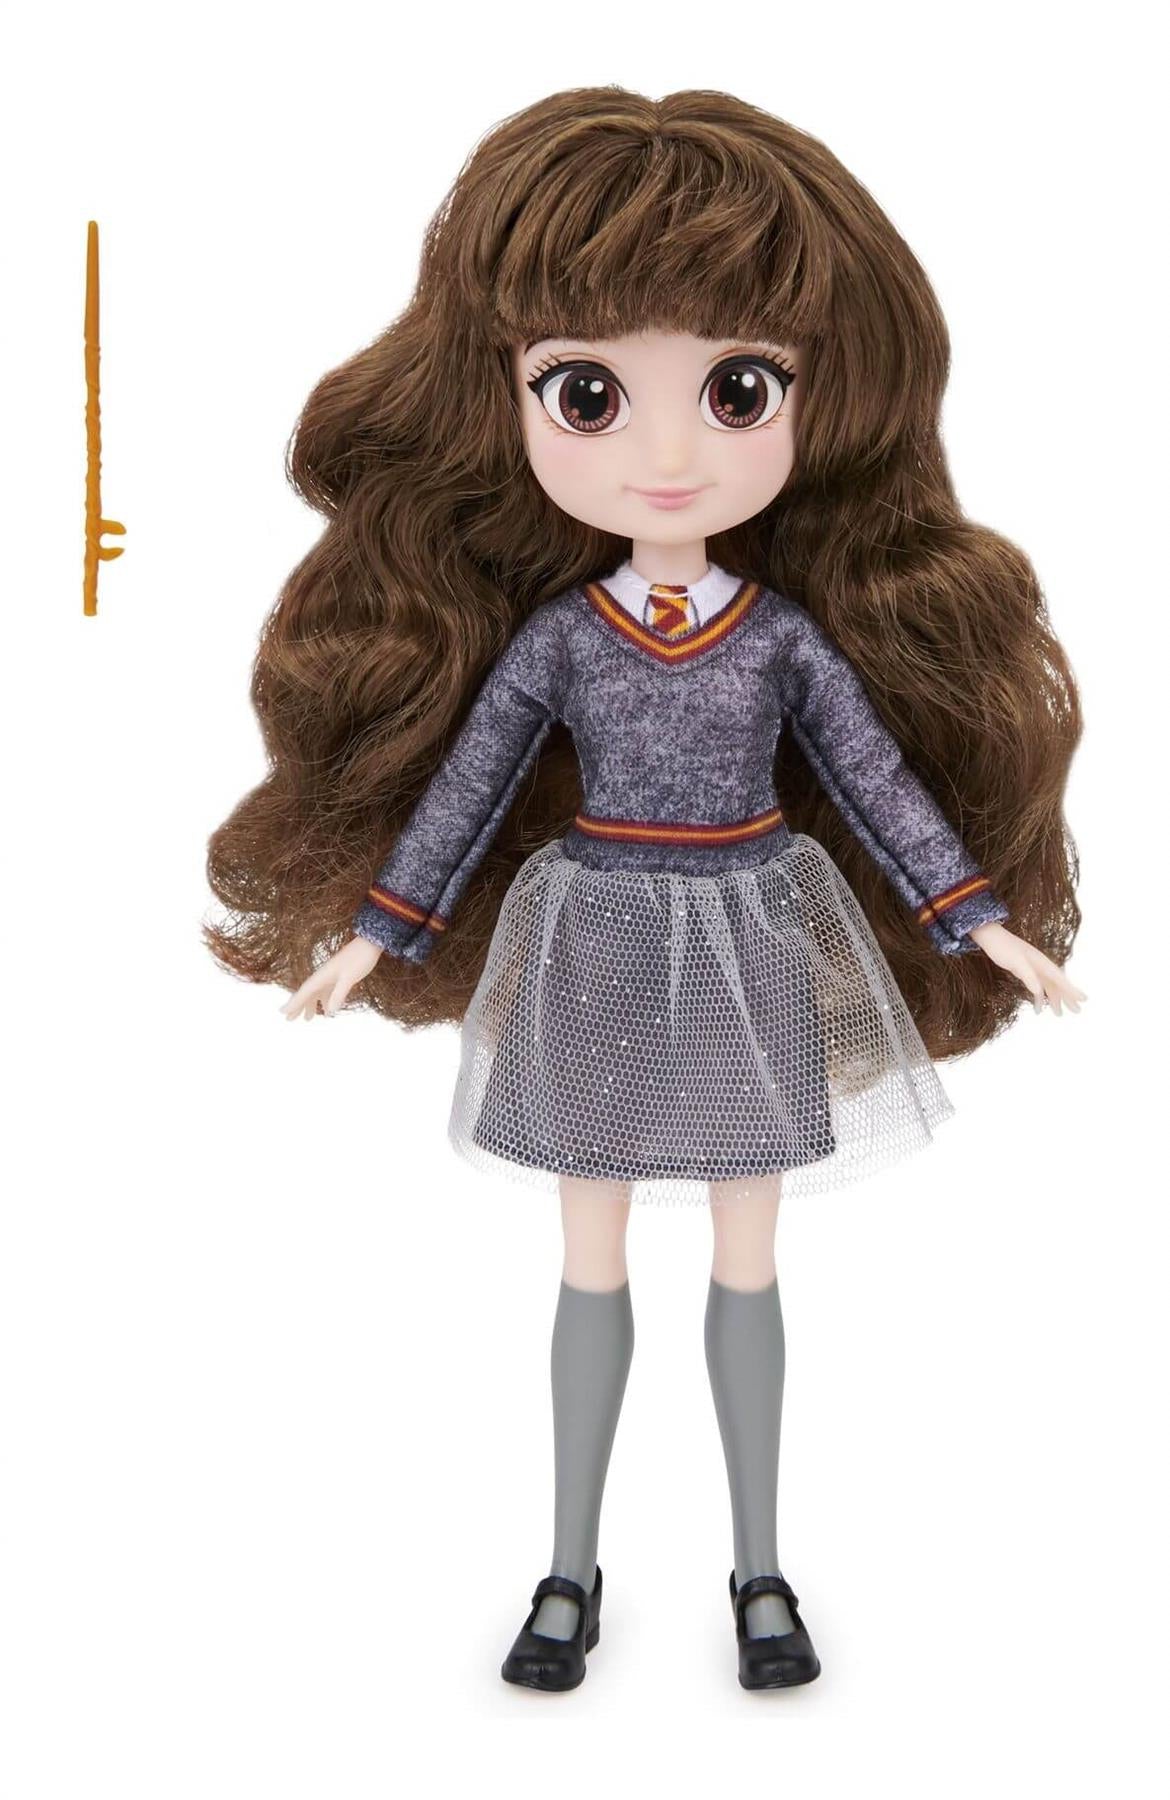 Wizarding World Hermione Granger 8" Doll